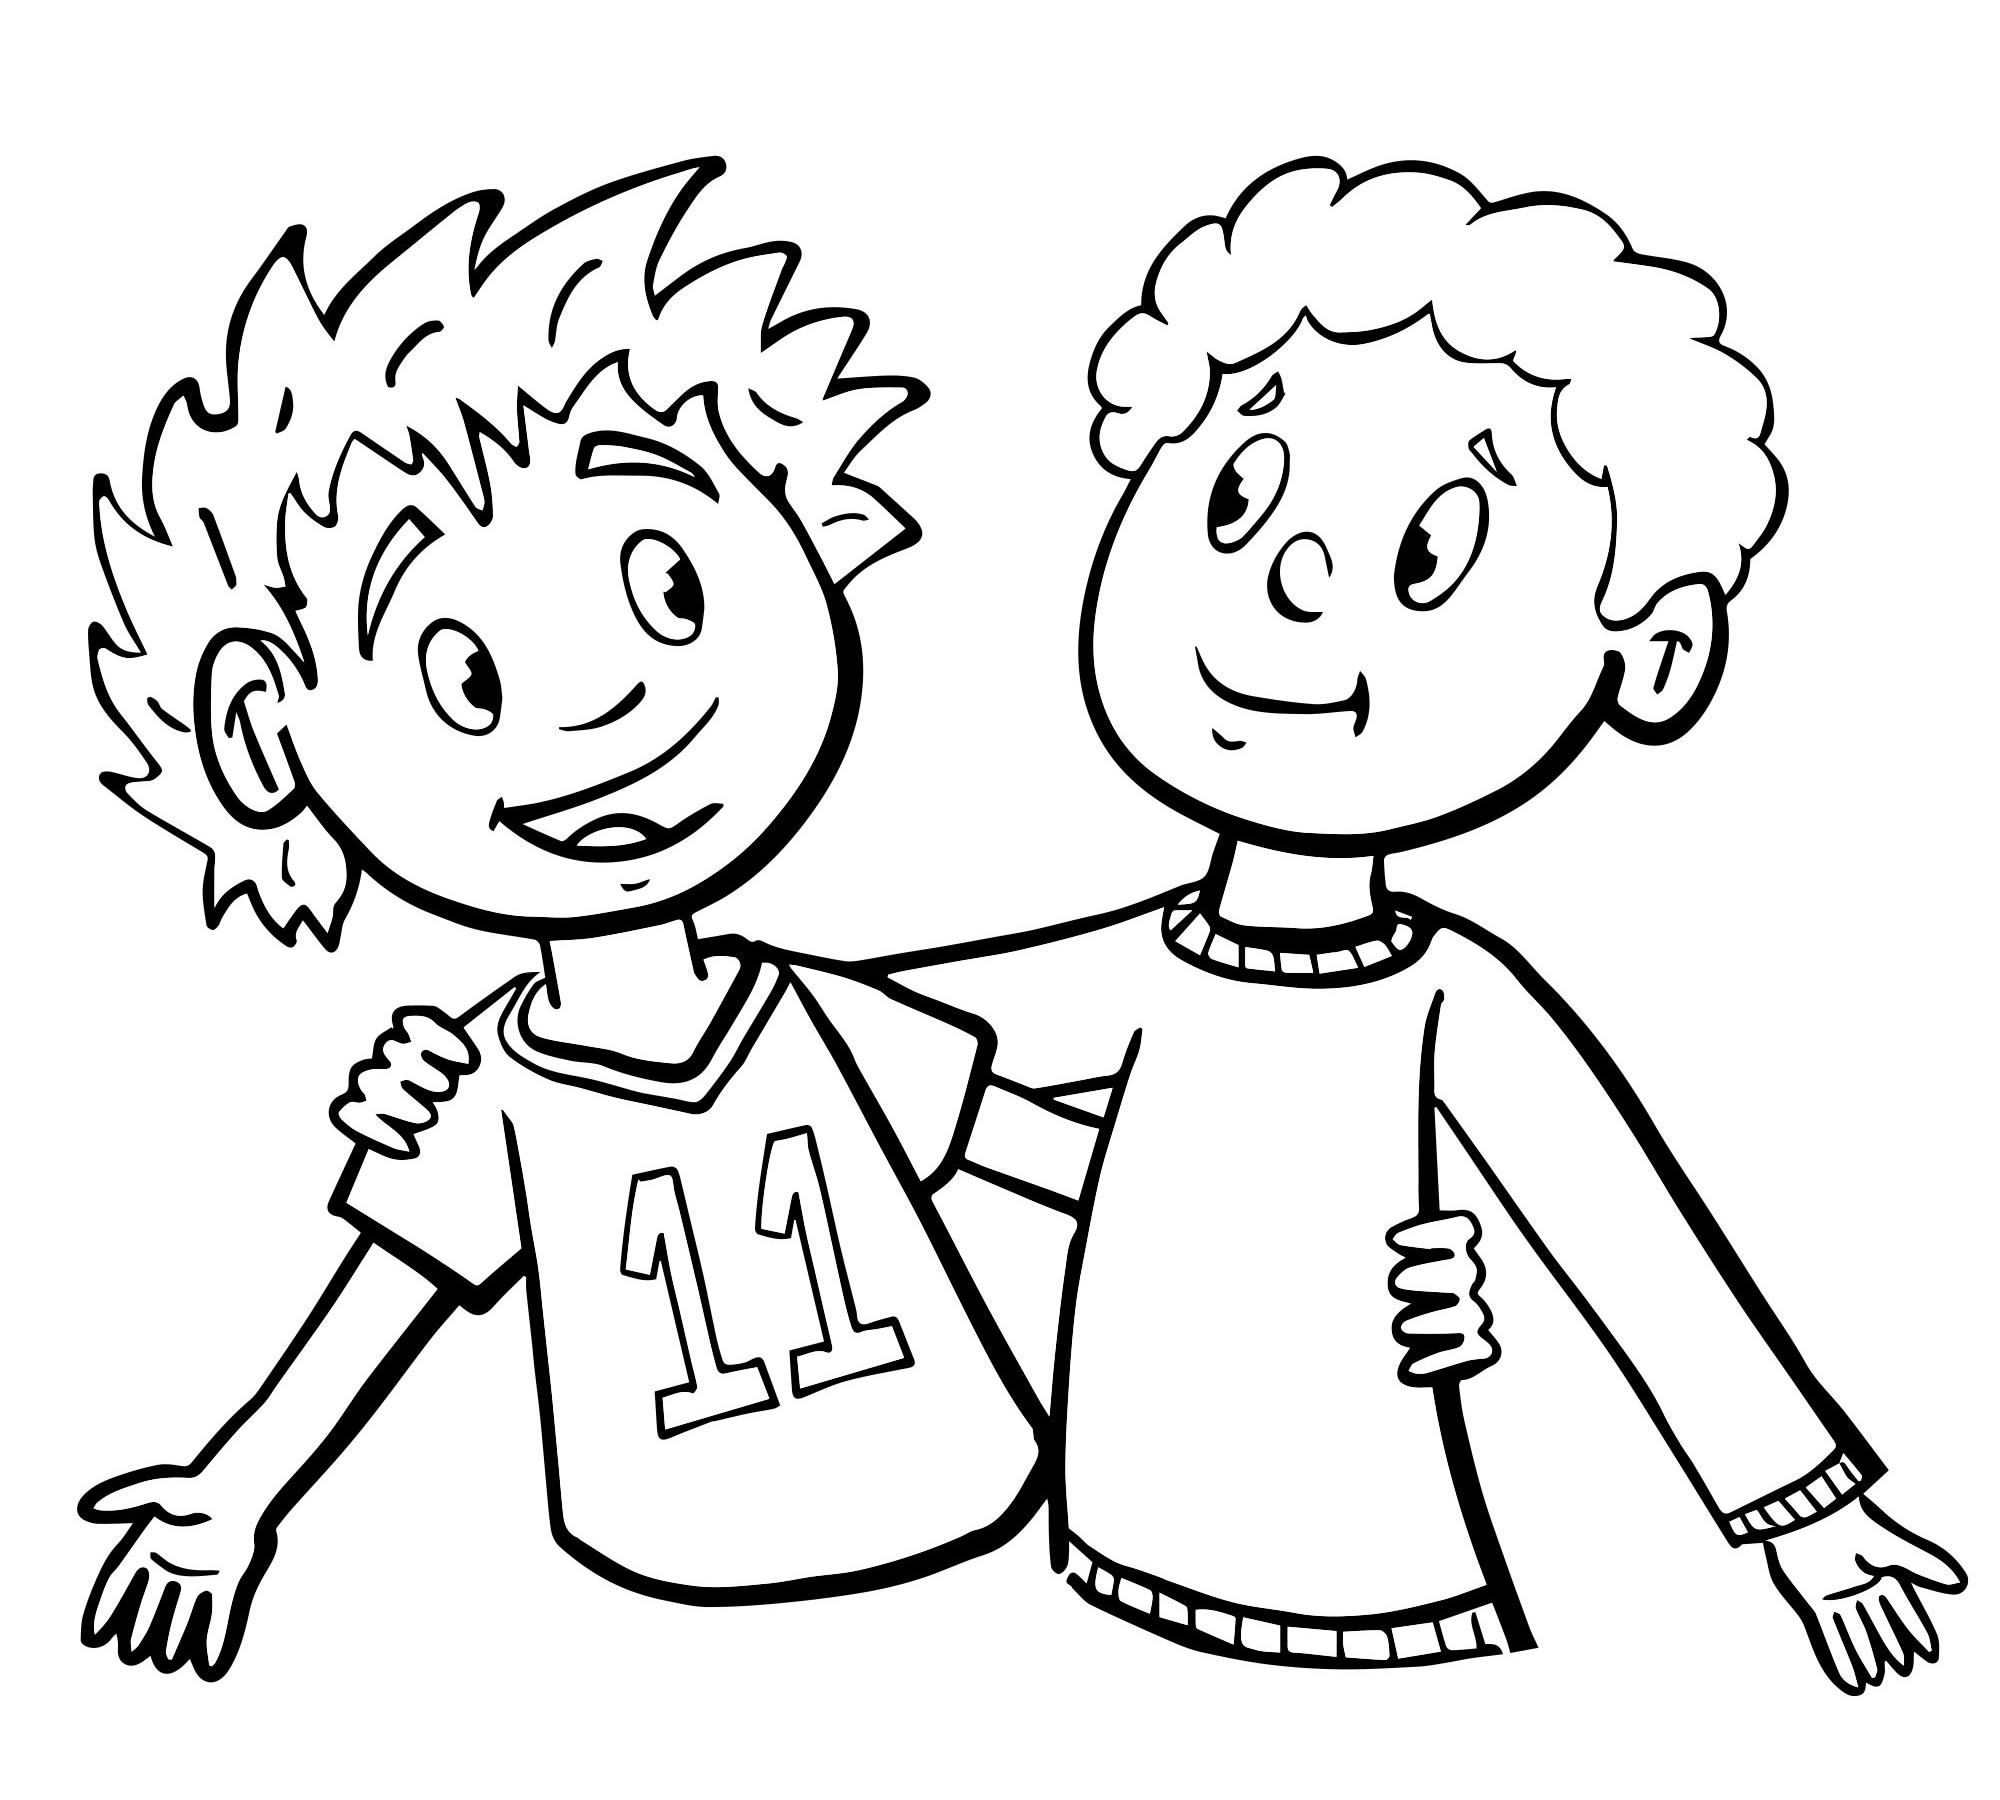 Дружба дети: векторные изображения и иллюстрации, которые можно скачать бесплатно | Freepik